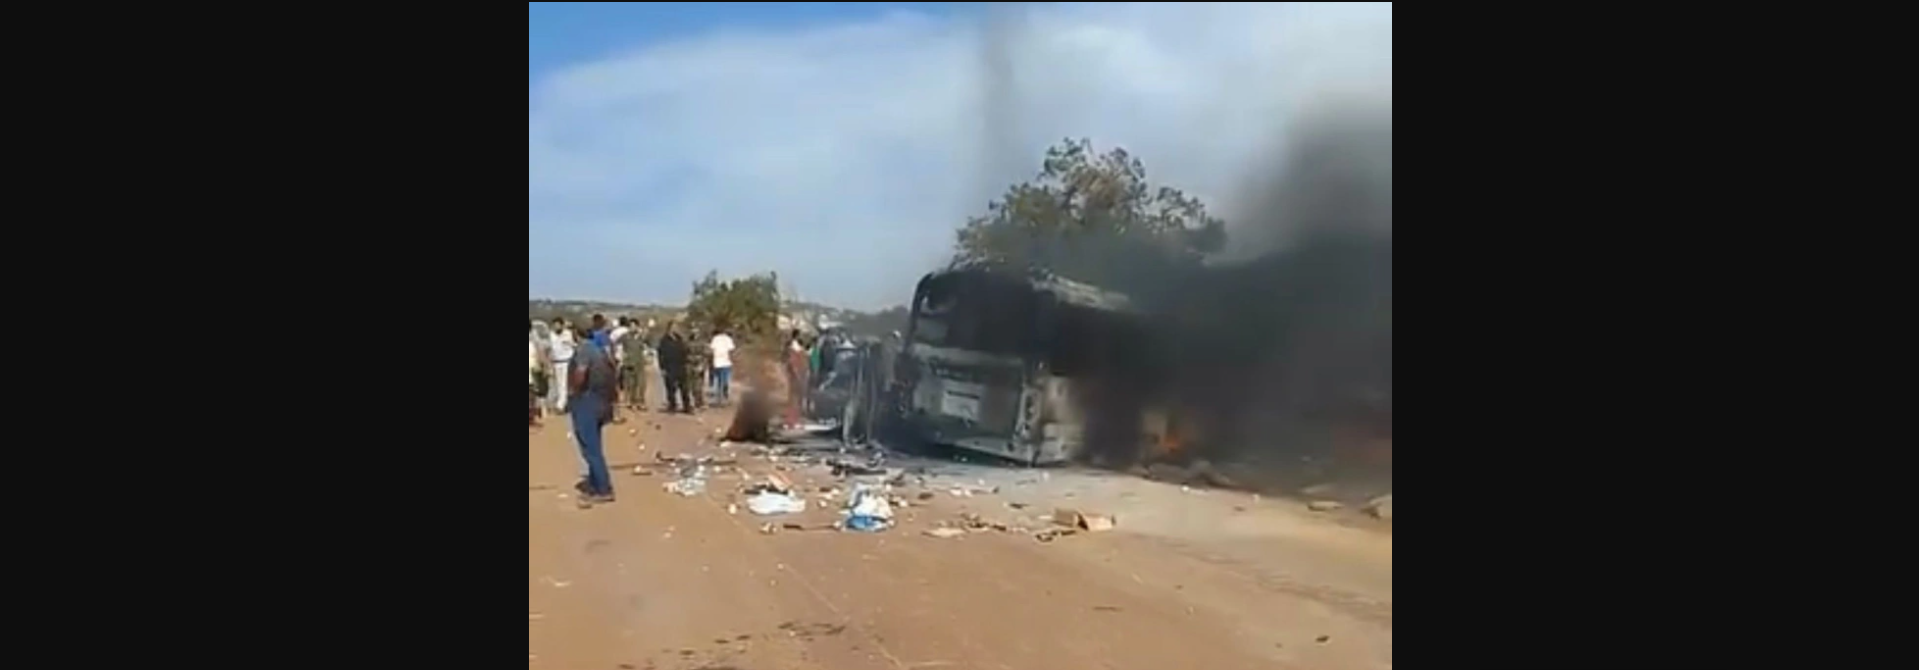 Βίντεο από την Λιβύη: Στις φλόγες το λεωφορείο με τους τέσσερις Έλληνες στρατιωτικούς που έχασαν τη ζωή τους